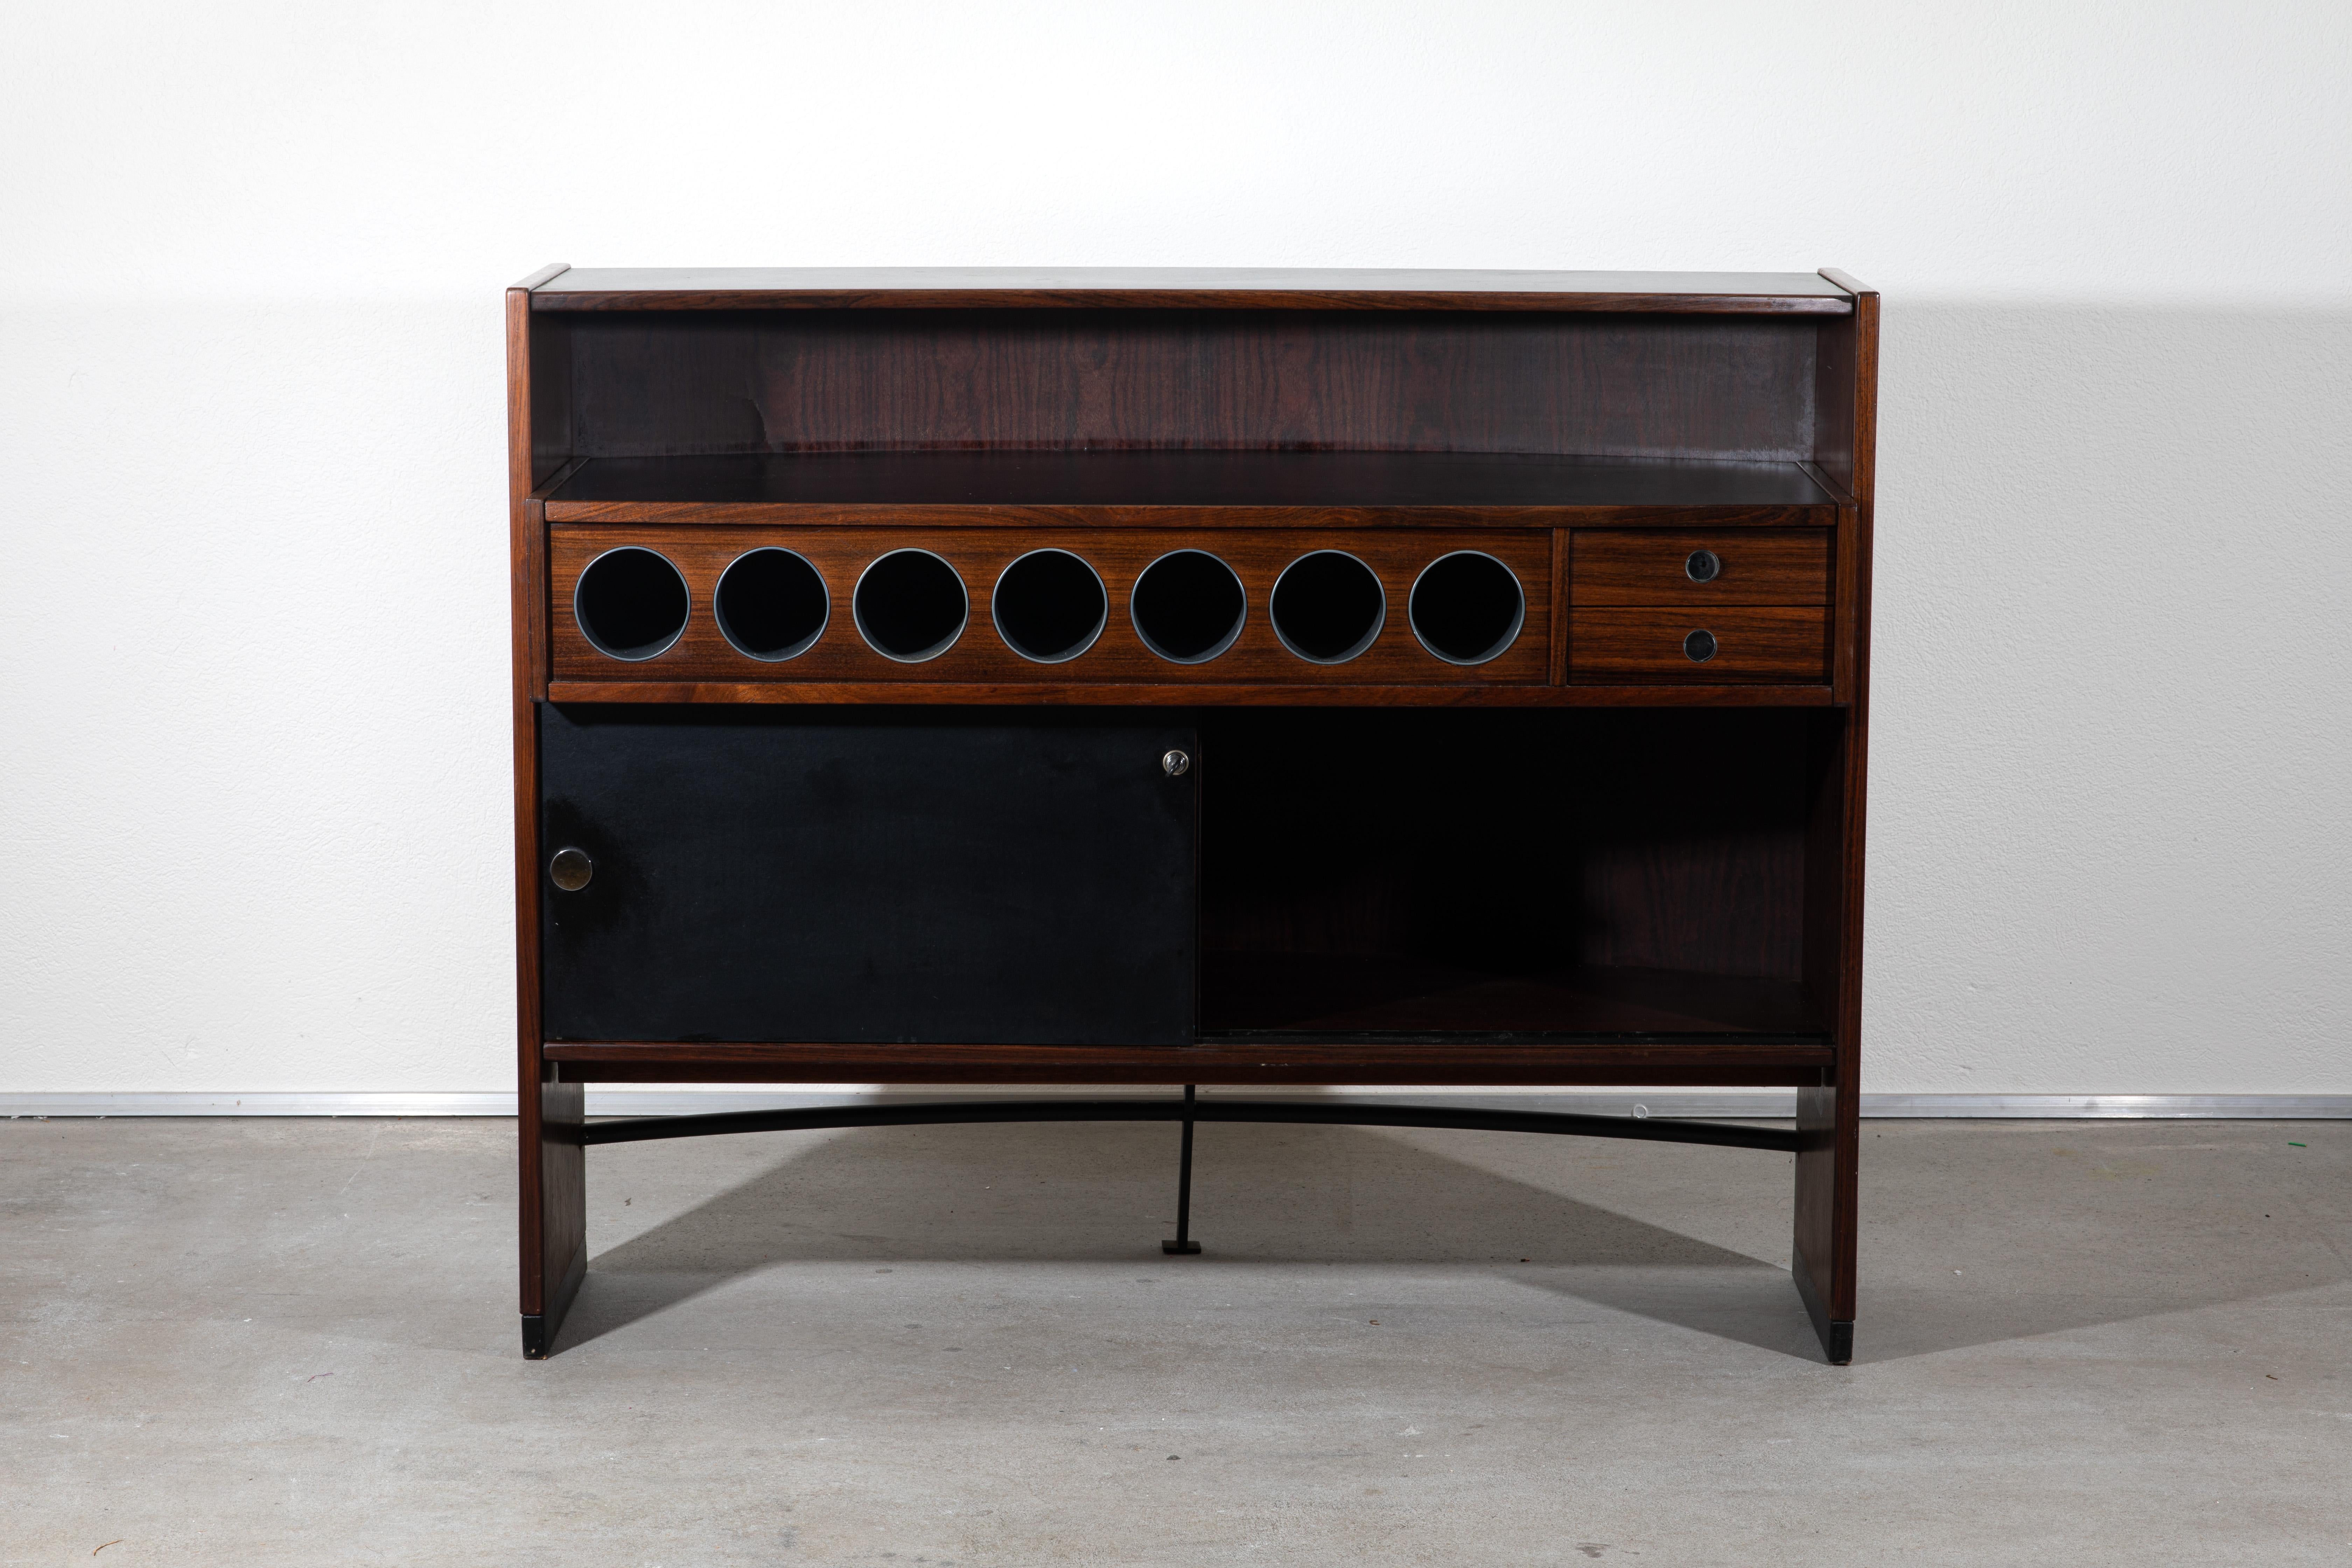 Eric Buch était un designer de meubles danois connu pour ses créations modernes du milieu du XXe siècle. Le bar sec avec tabourets du milieu du siècle d'Eric Buch reflète les caractéristiques de design épuré et fonctionnel associées au mobilier